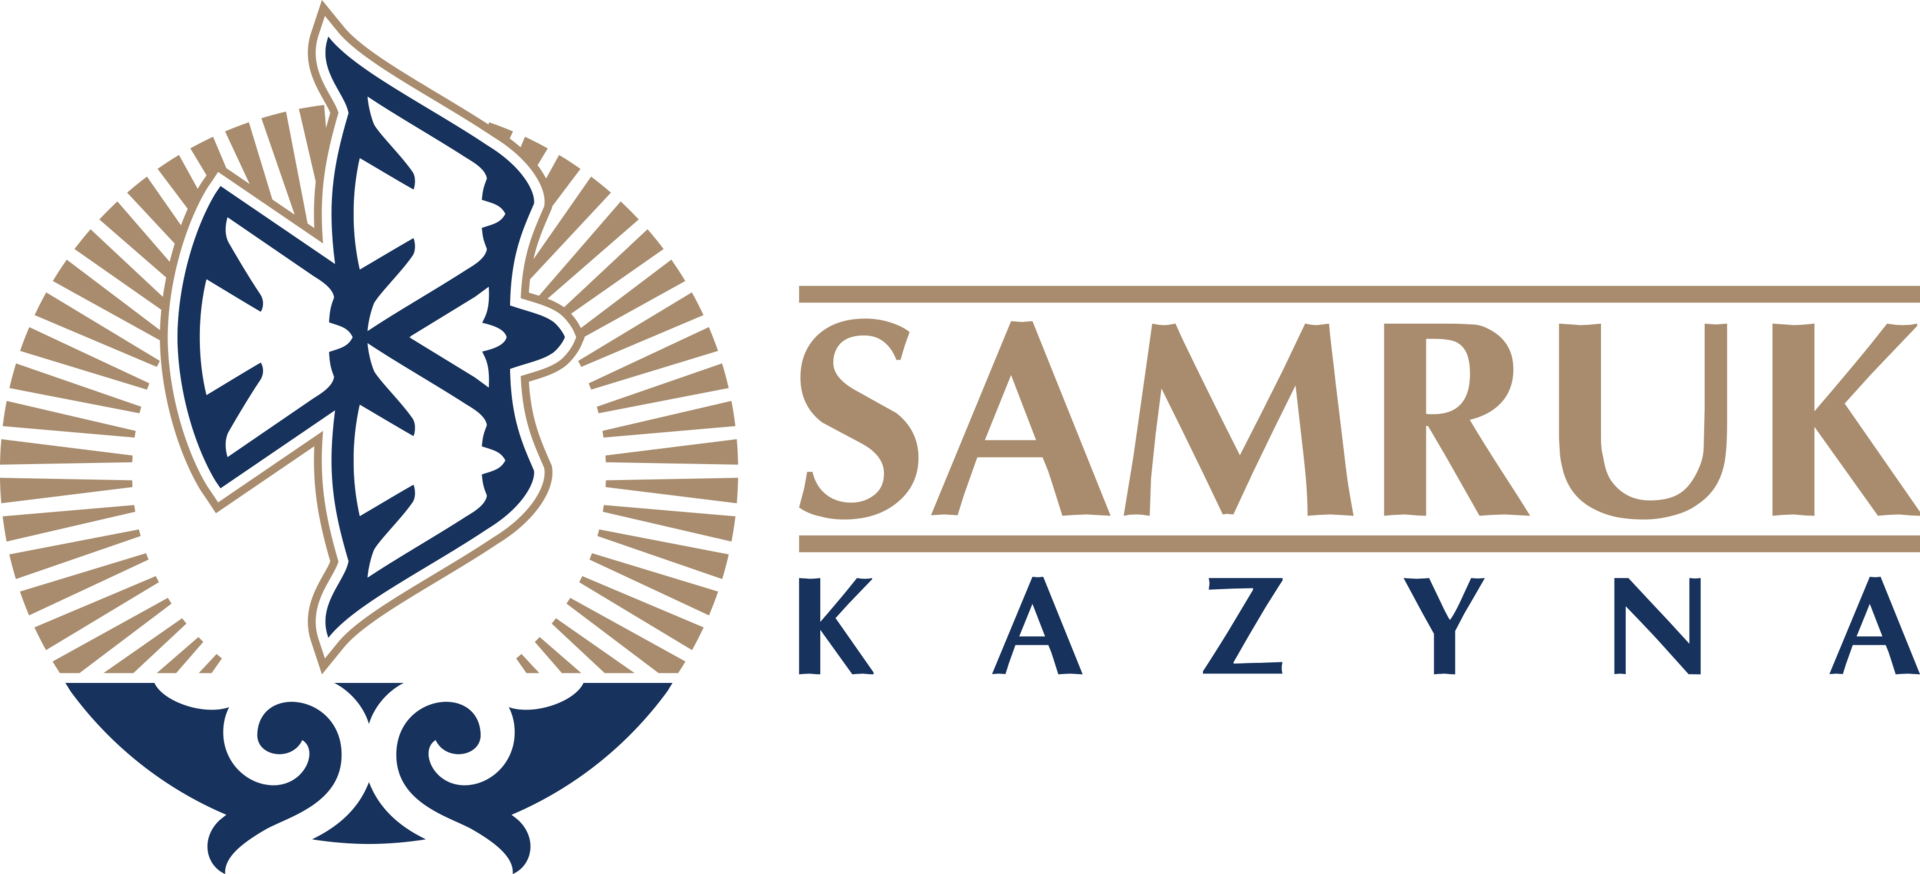 Самрук-Казына - Инвестиционный холдинг - Фонд национального благосостояния